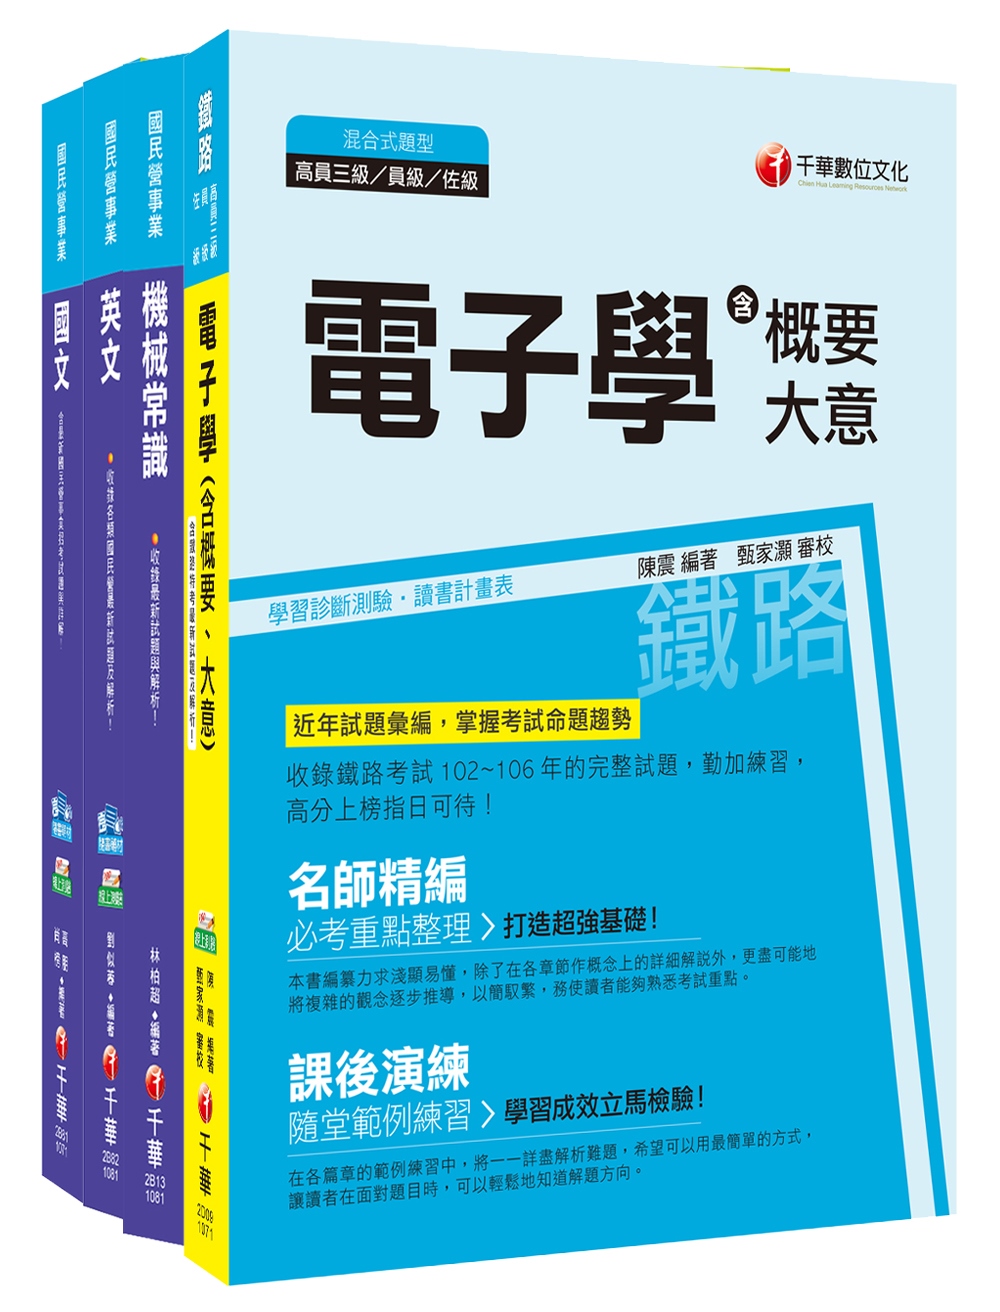 107年【車輛修護類】台灣中油公司技術員課文版套書